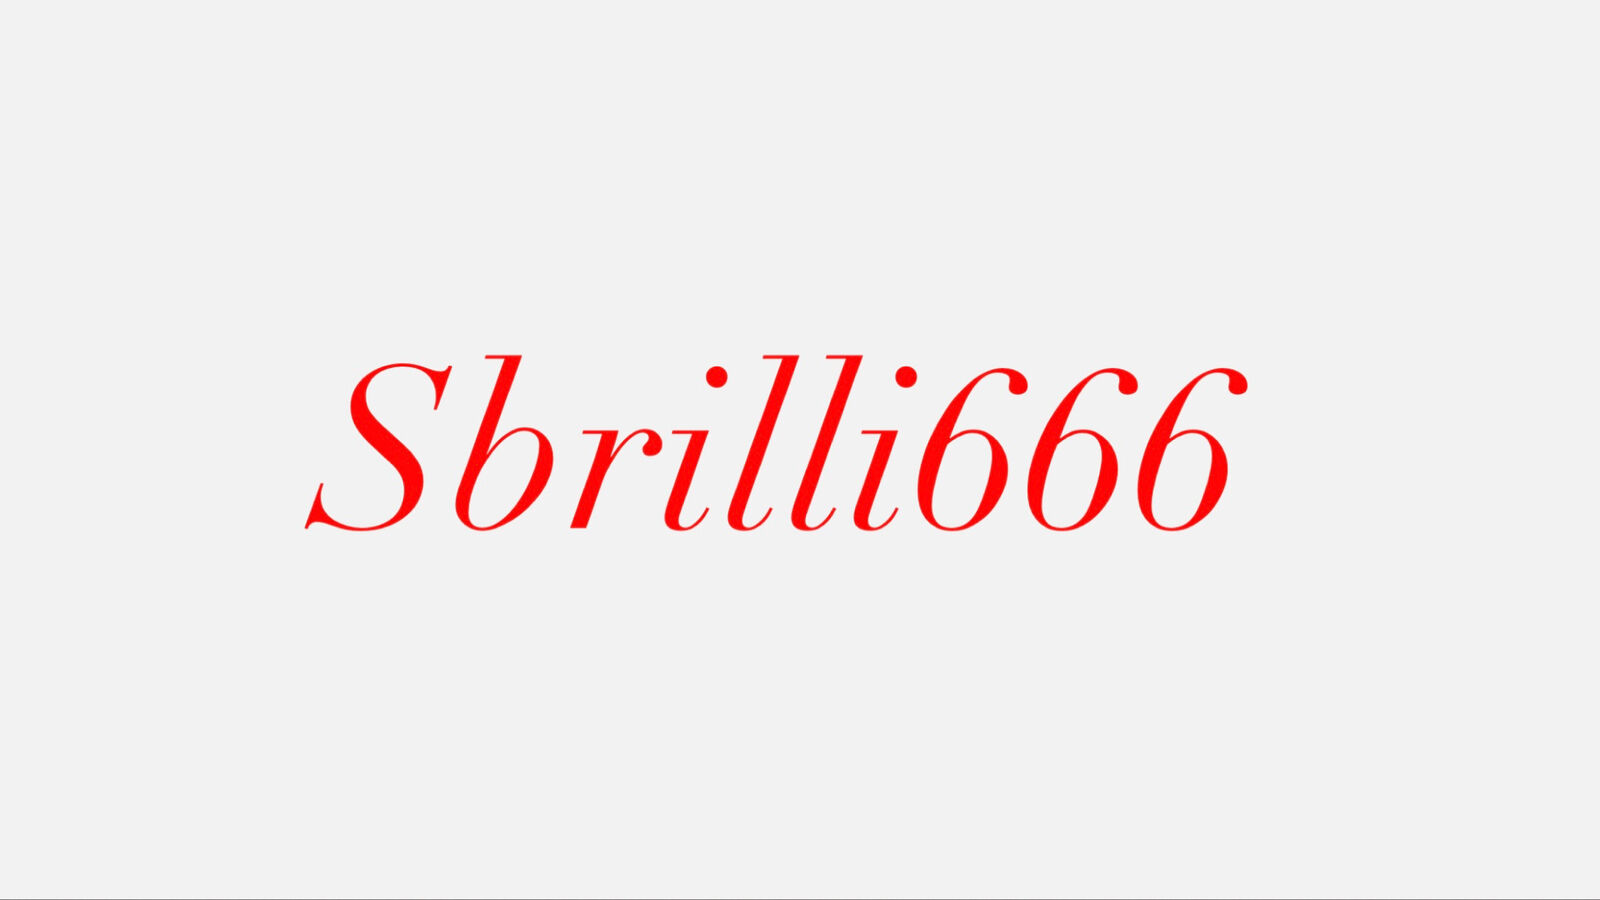 See Sbrilli Six Six Six profile